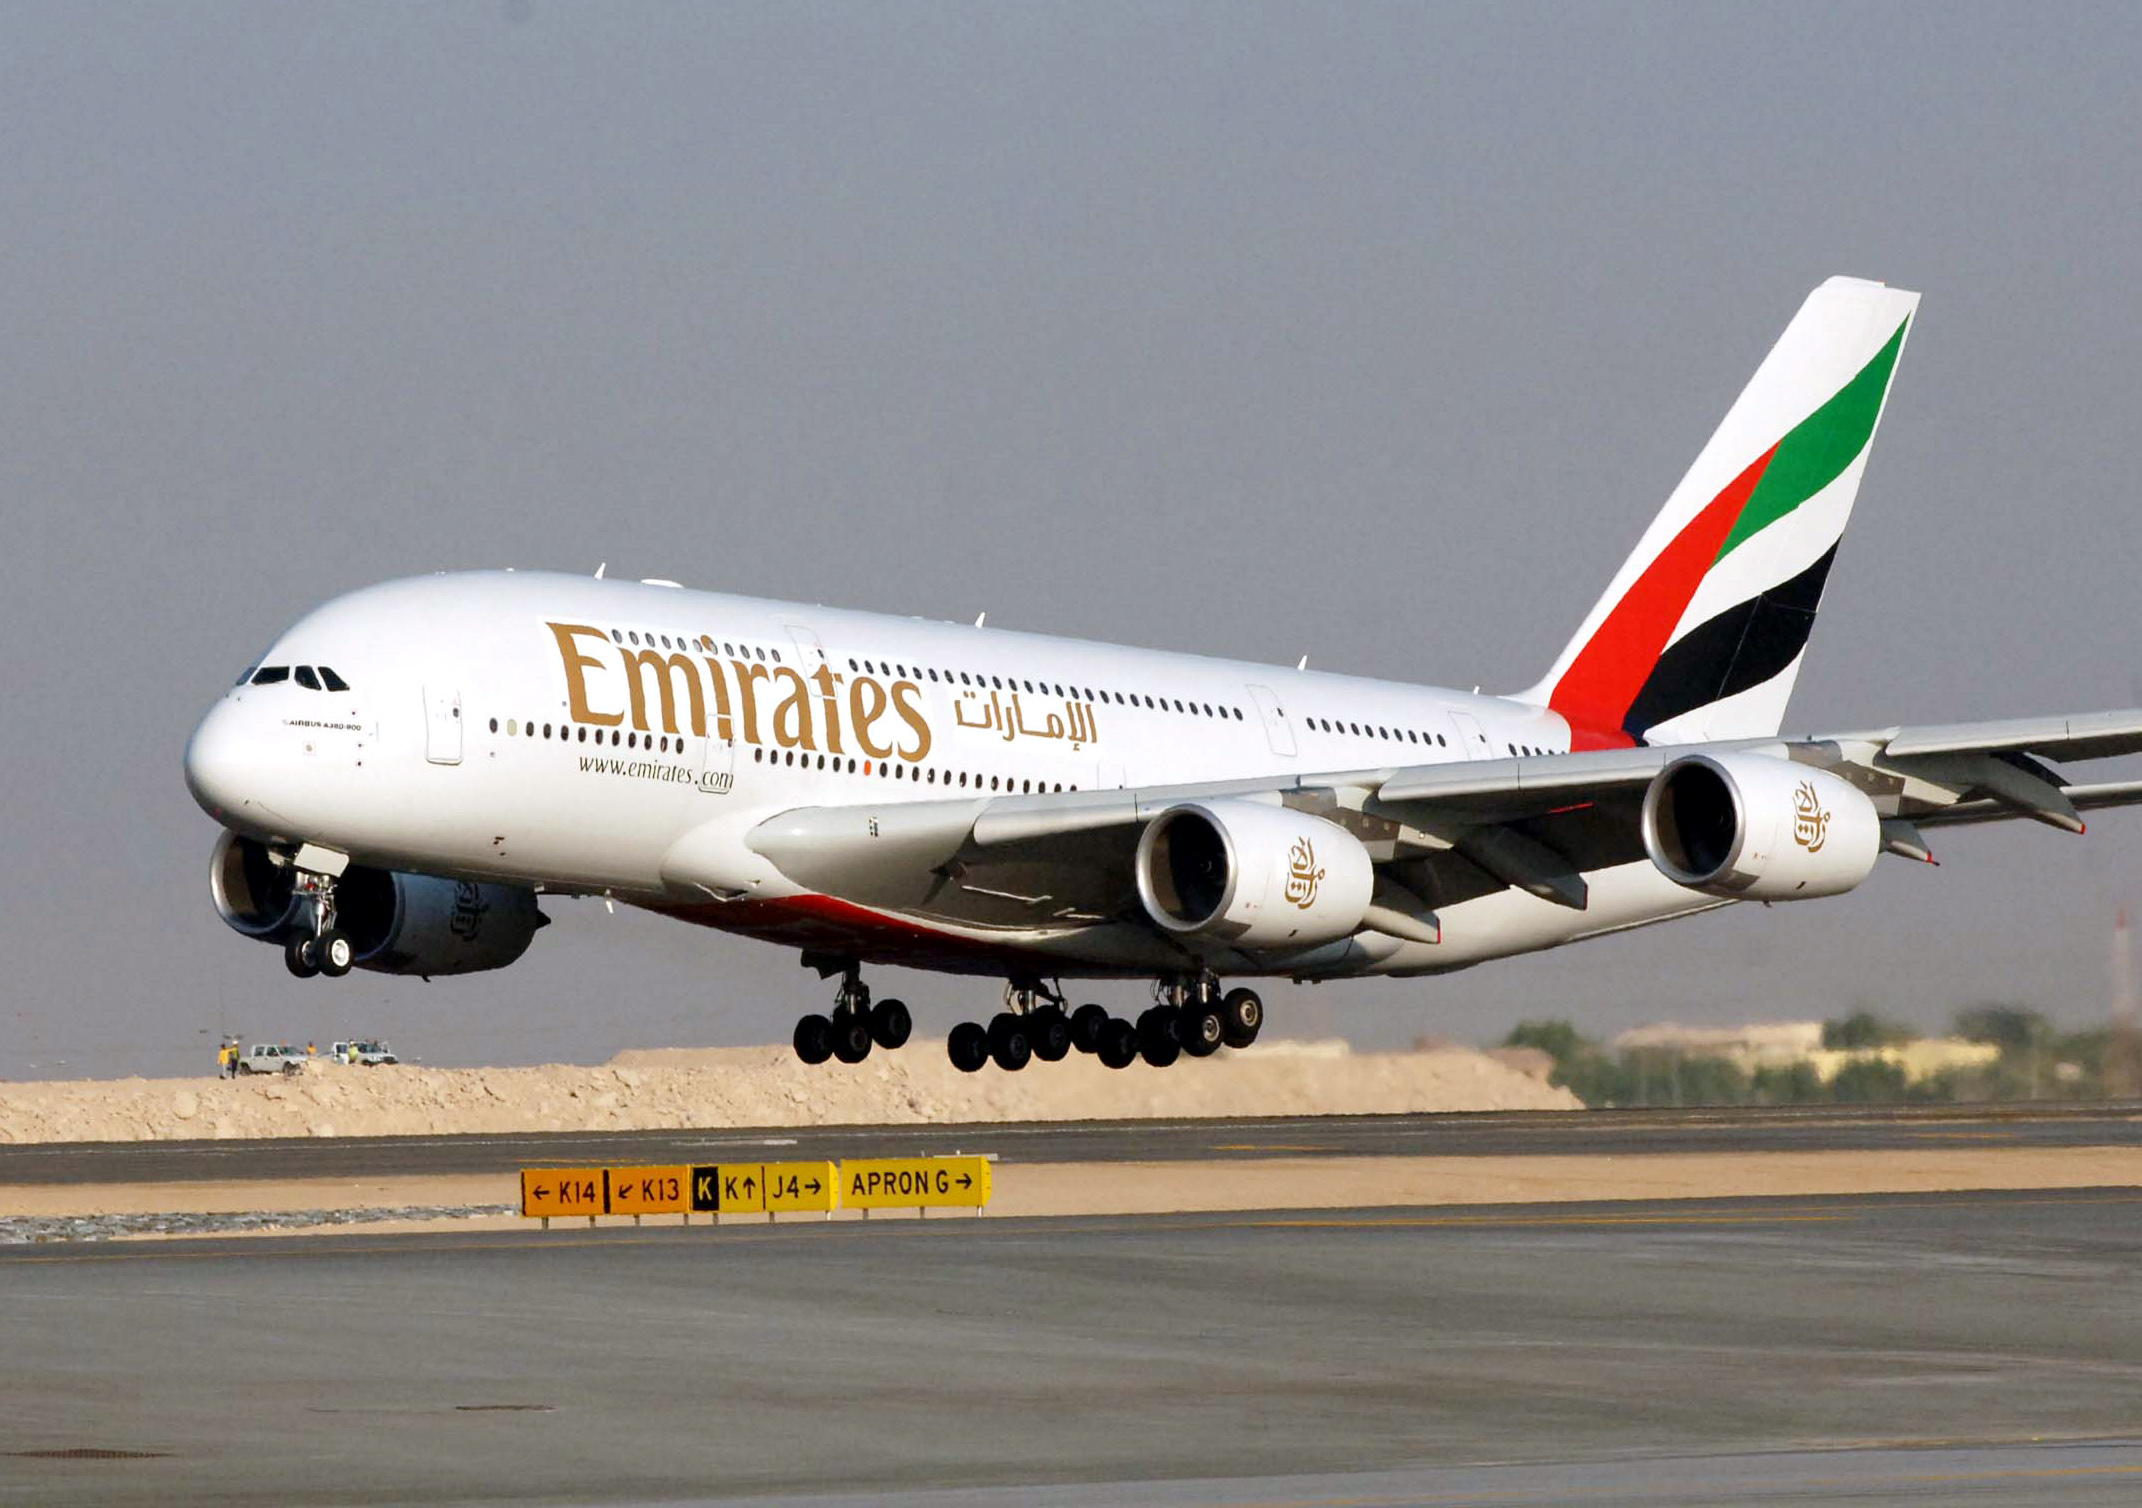 Paret arbetade som flygvärdar på Emirates Airlines.